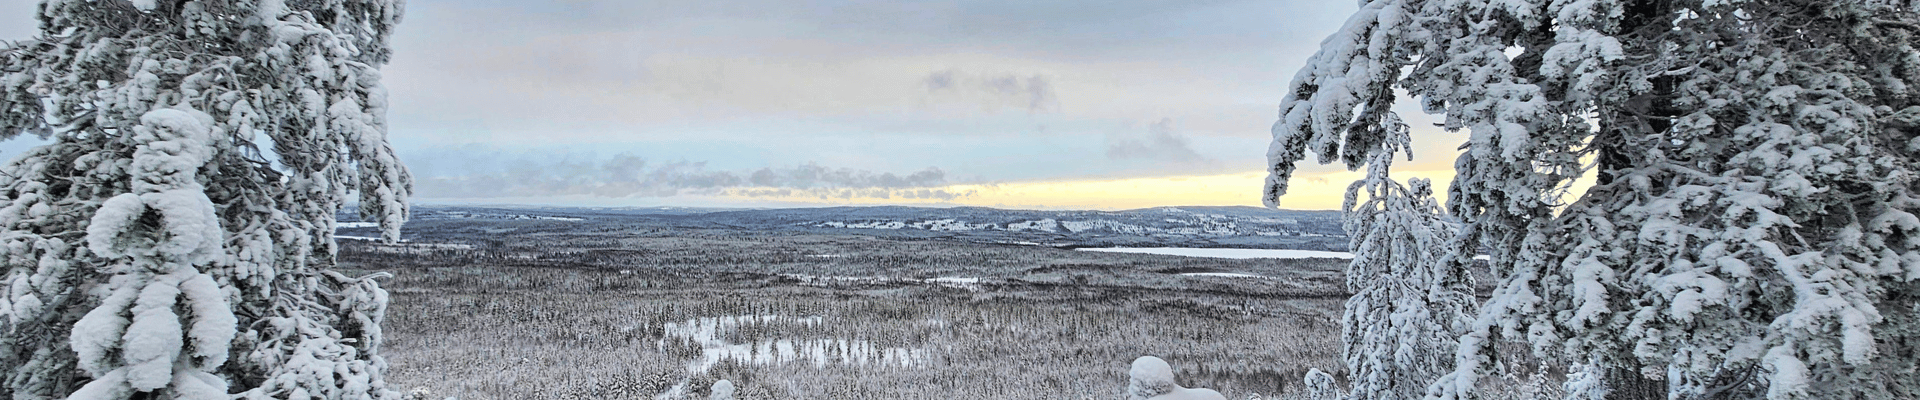 Vaaran laelta kuvattu talvinen maisema.